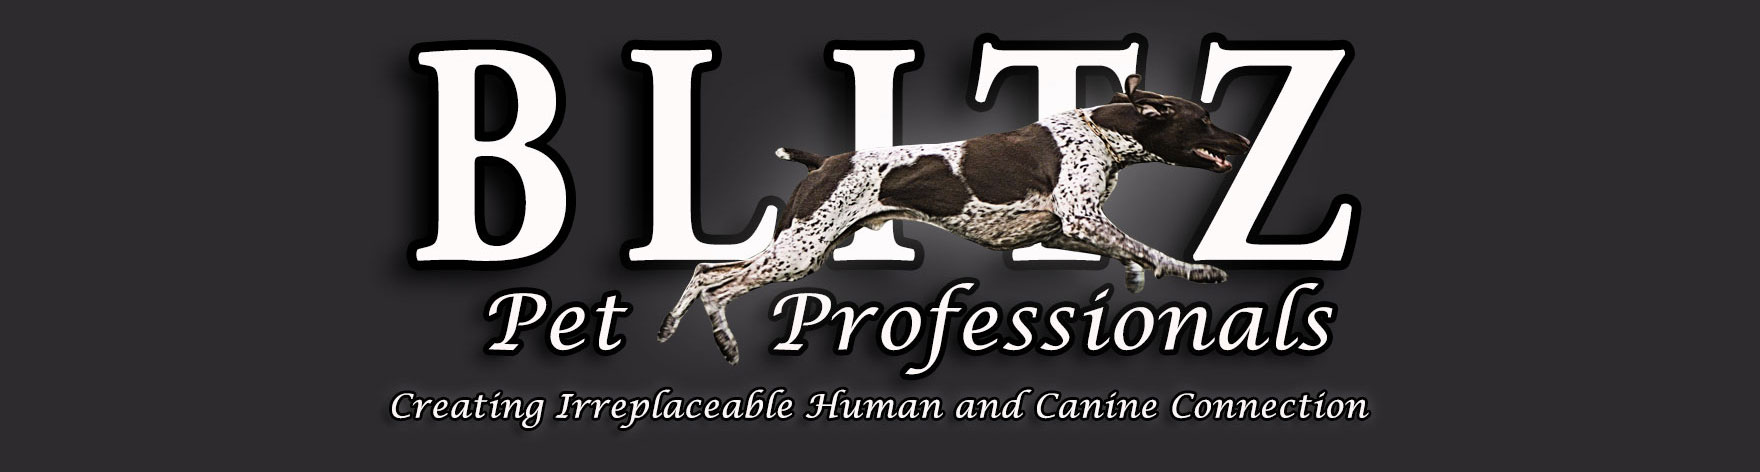 Blitz Pet Professionals Banner